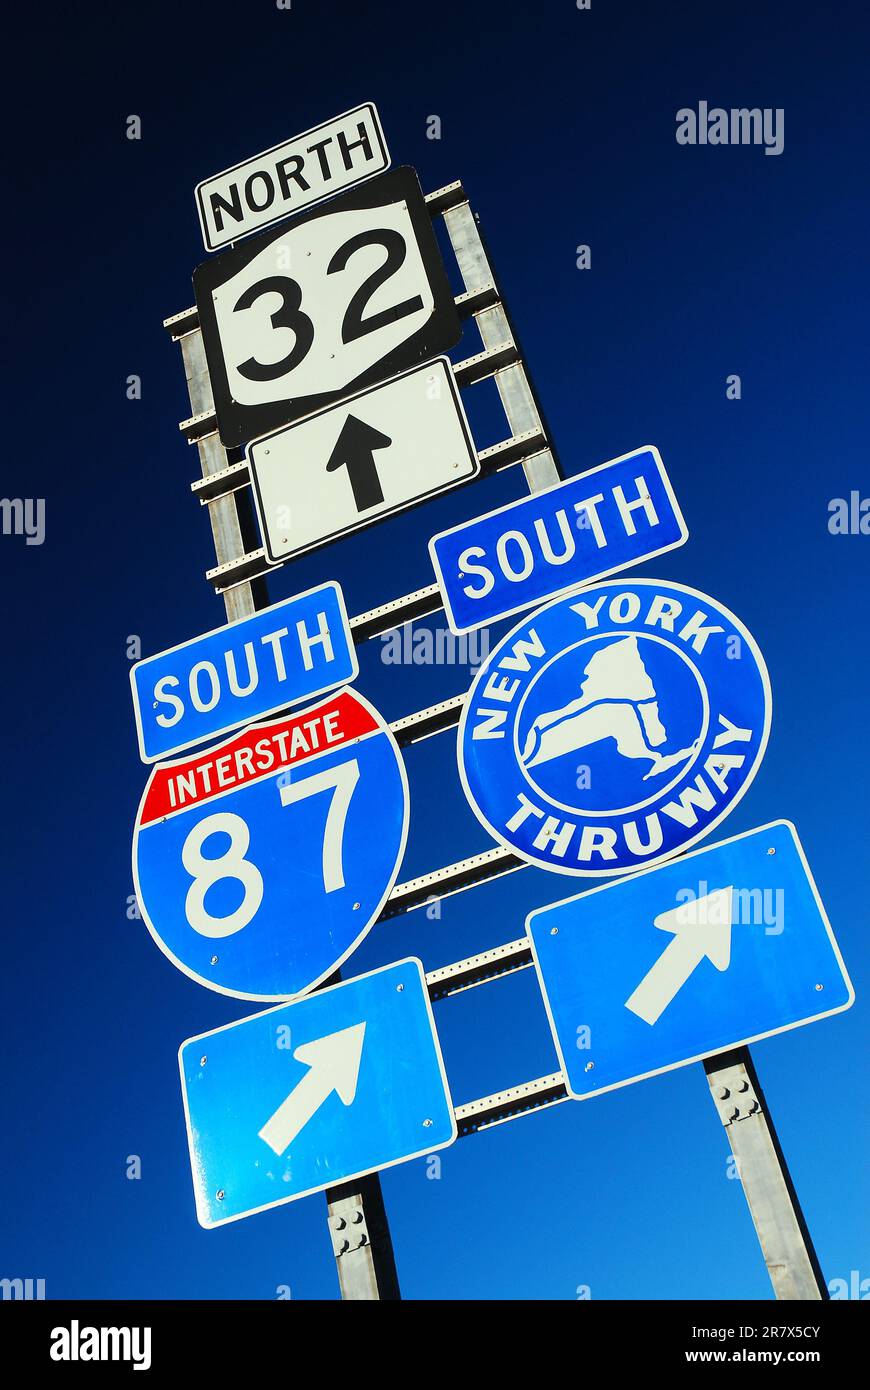 Mehrere Autobahnschilder in Update New York weisen auf die Interstate 85, den New York Thruway und eine State Road hin Stockfoto